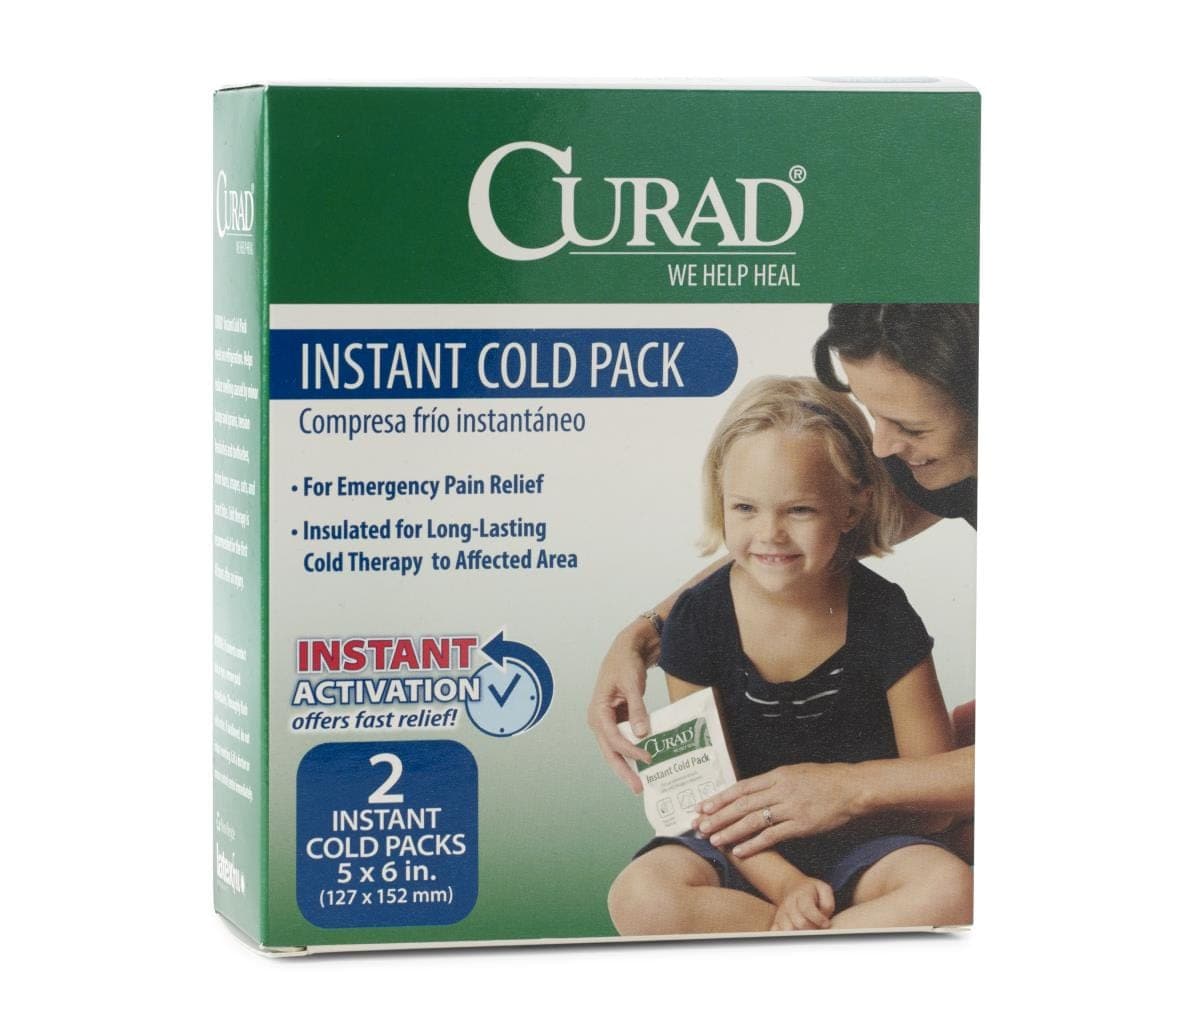 Medline Medline CURAD Instant Cold Packs CUR961R